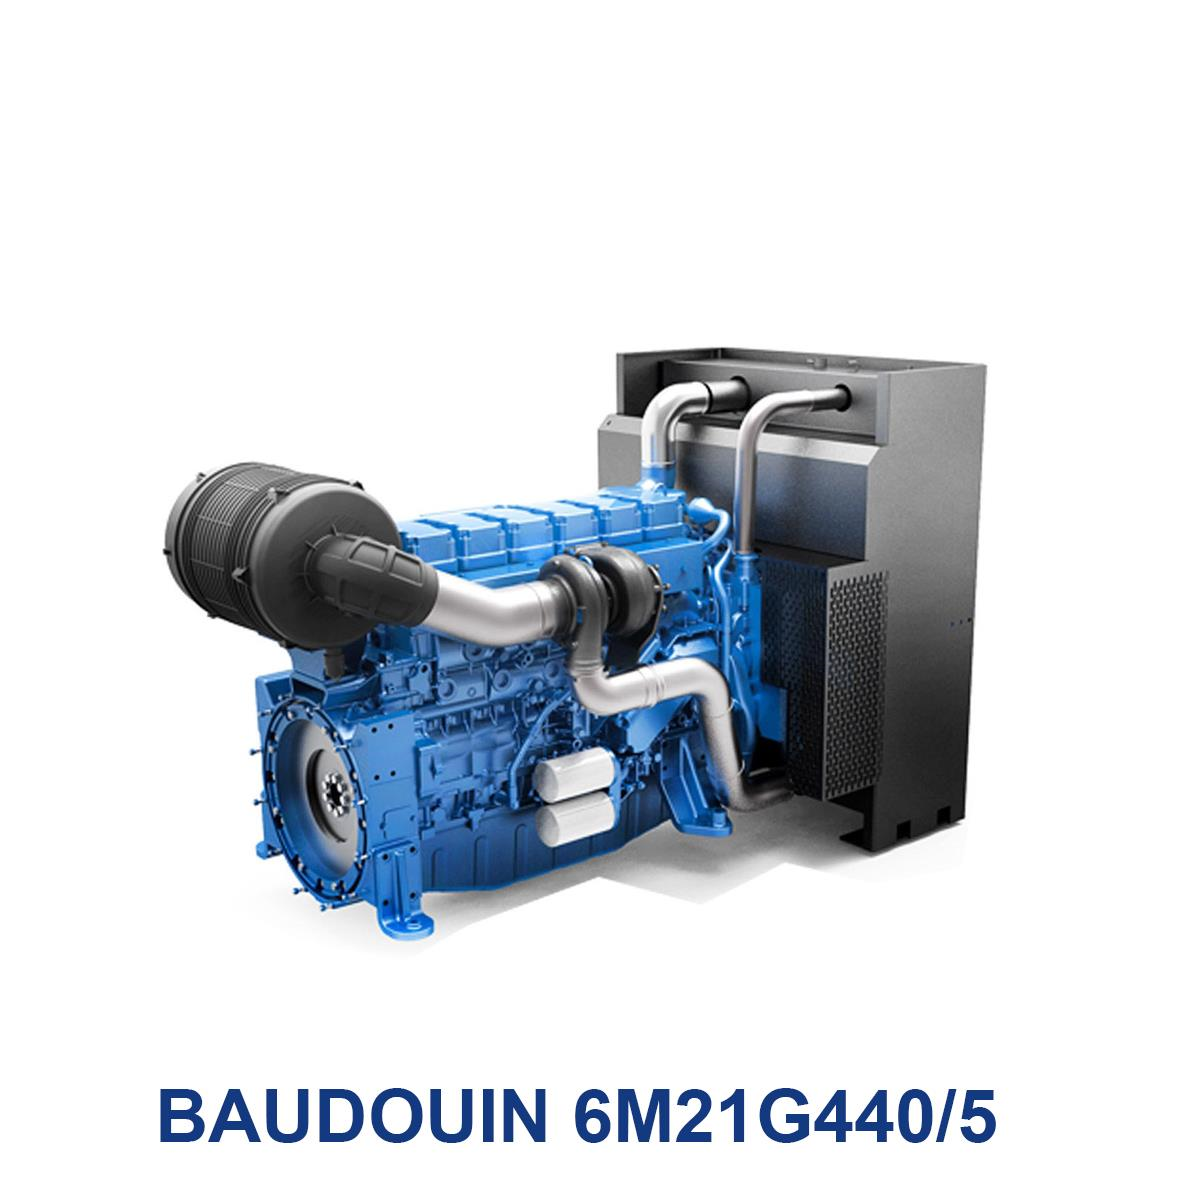 BAUDOUIN-6M21G440_5